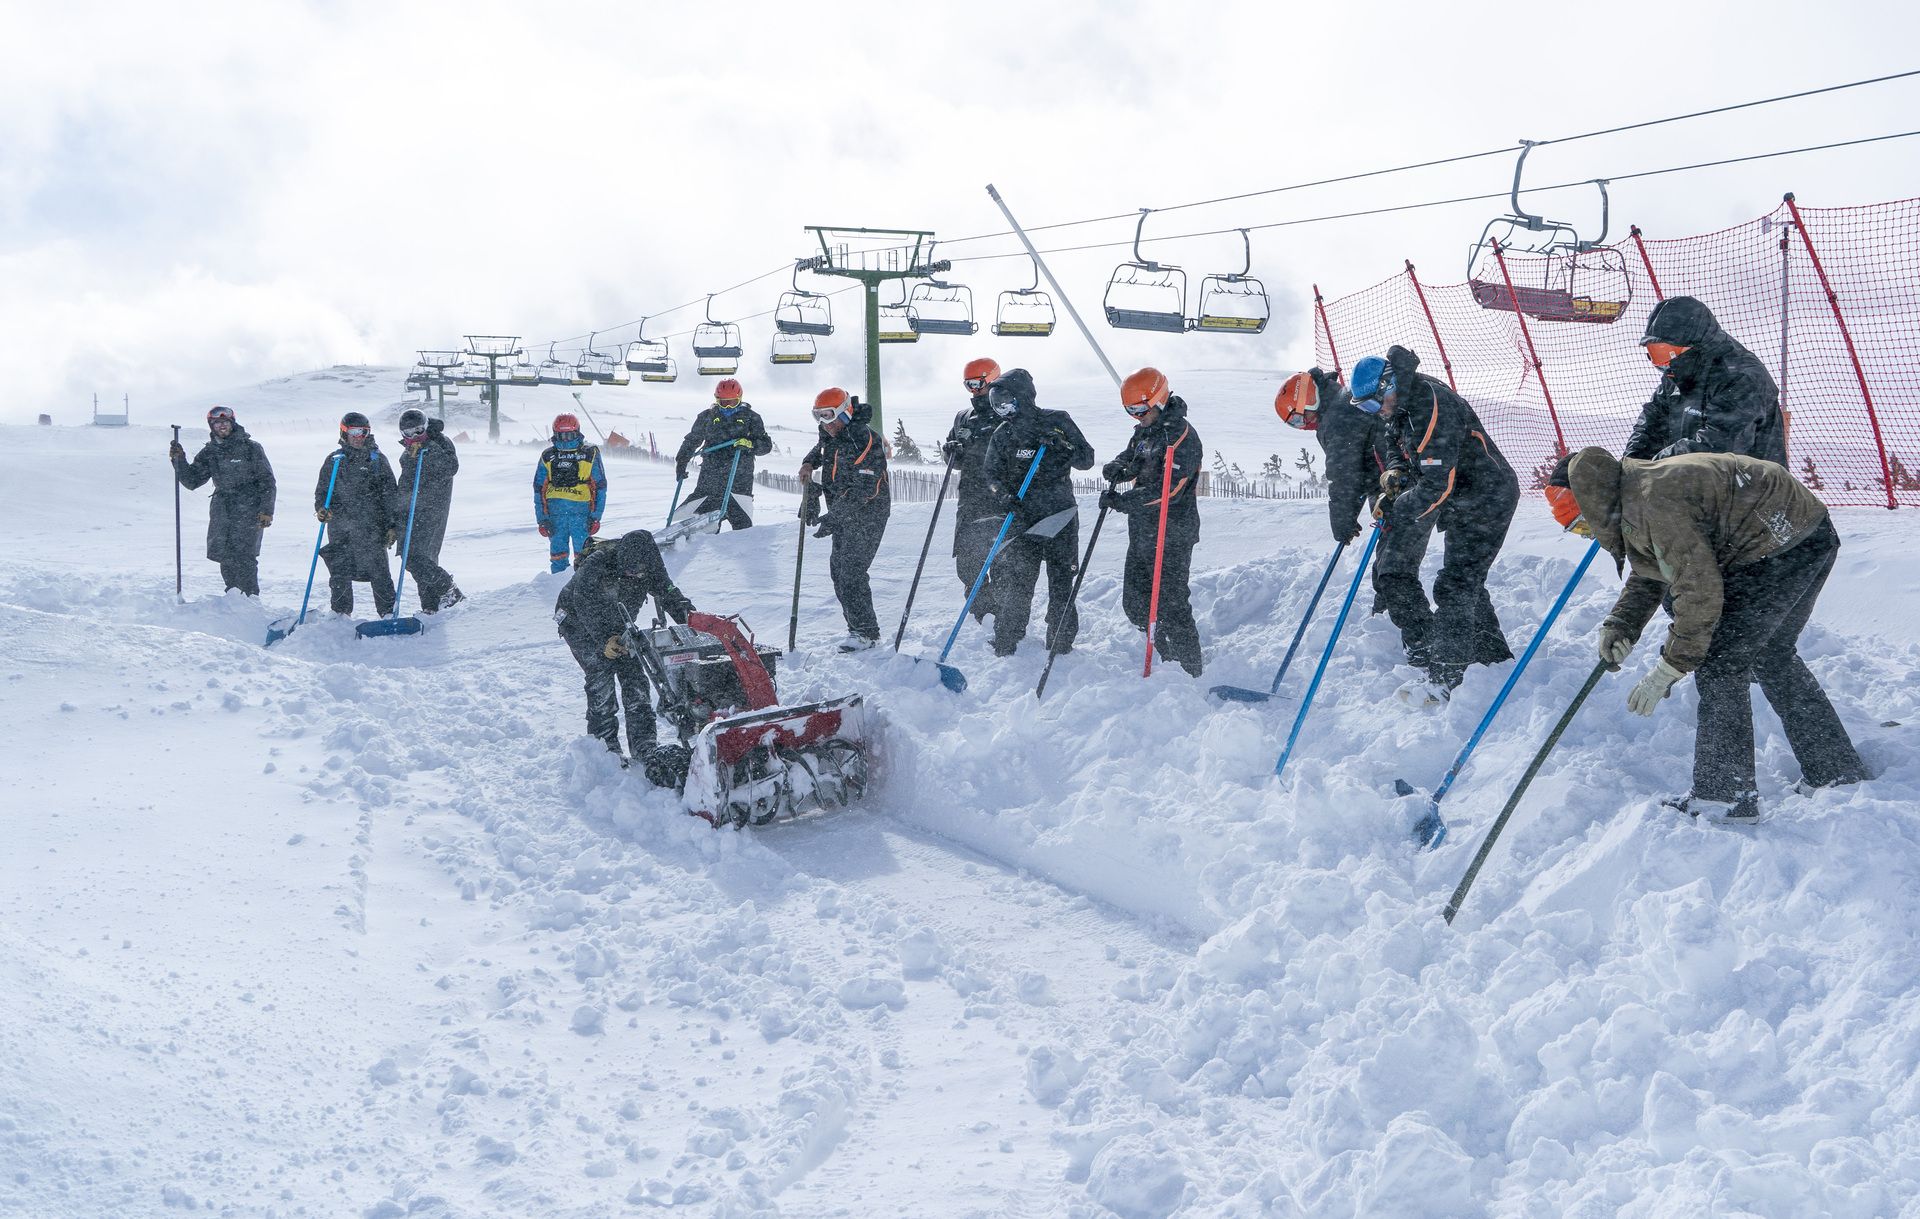 Competiciones de deports de nieve personas discapacitadas